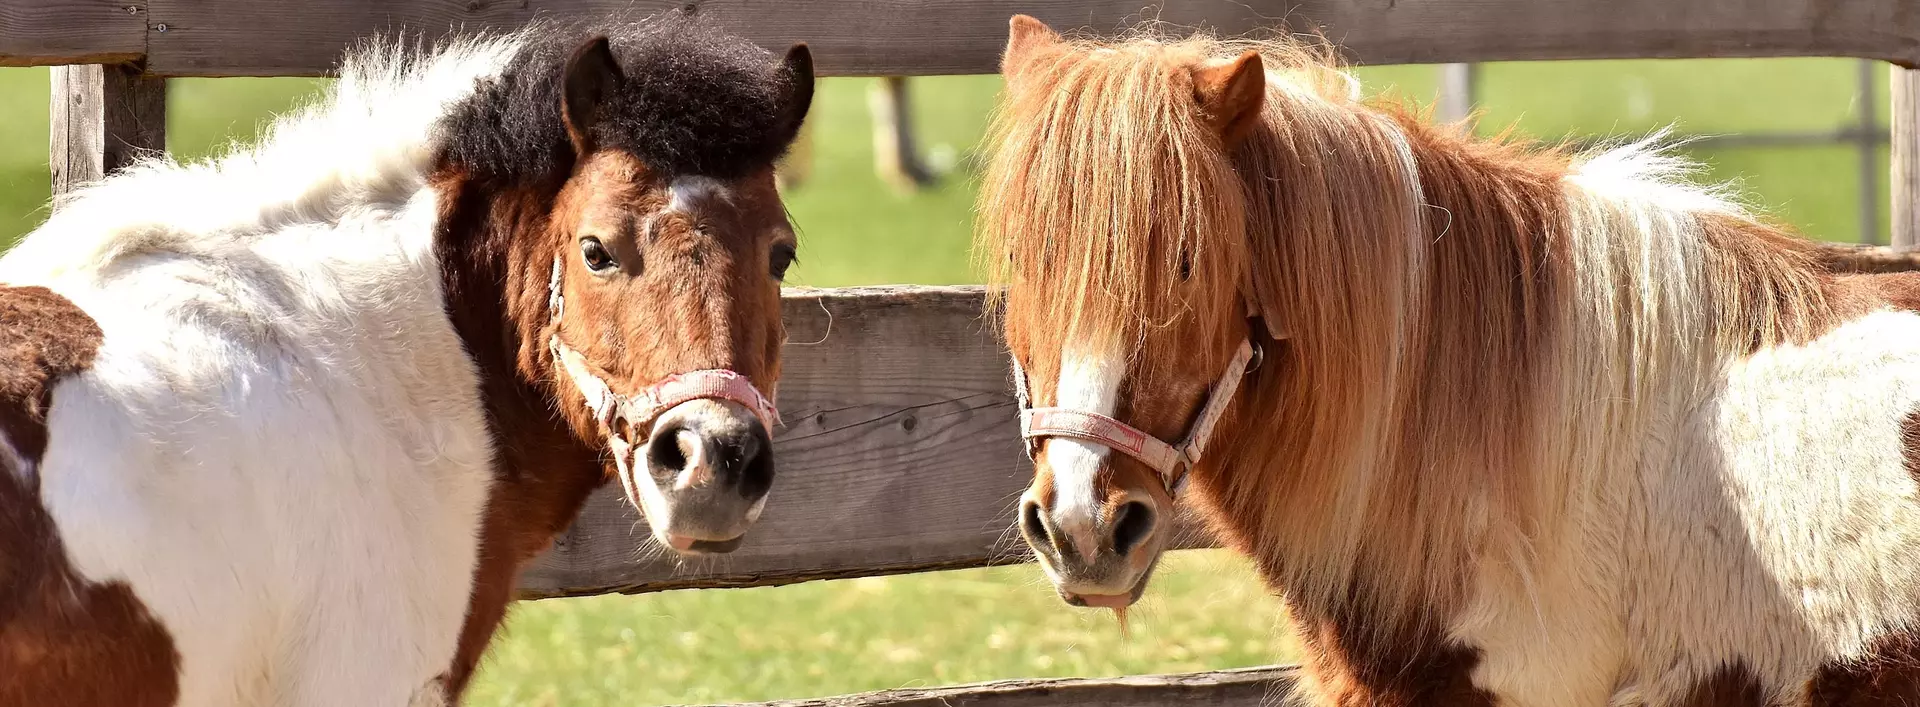 im Urlaub auf dem Reiterhof in Schleswig-Holstein auf Ponys reiten lernen